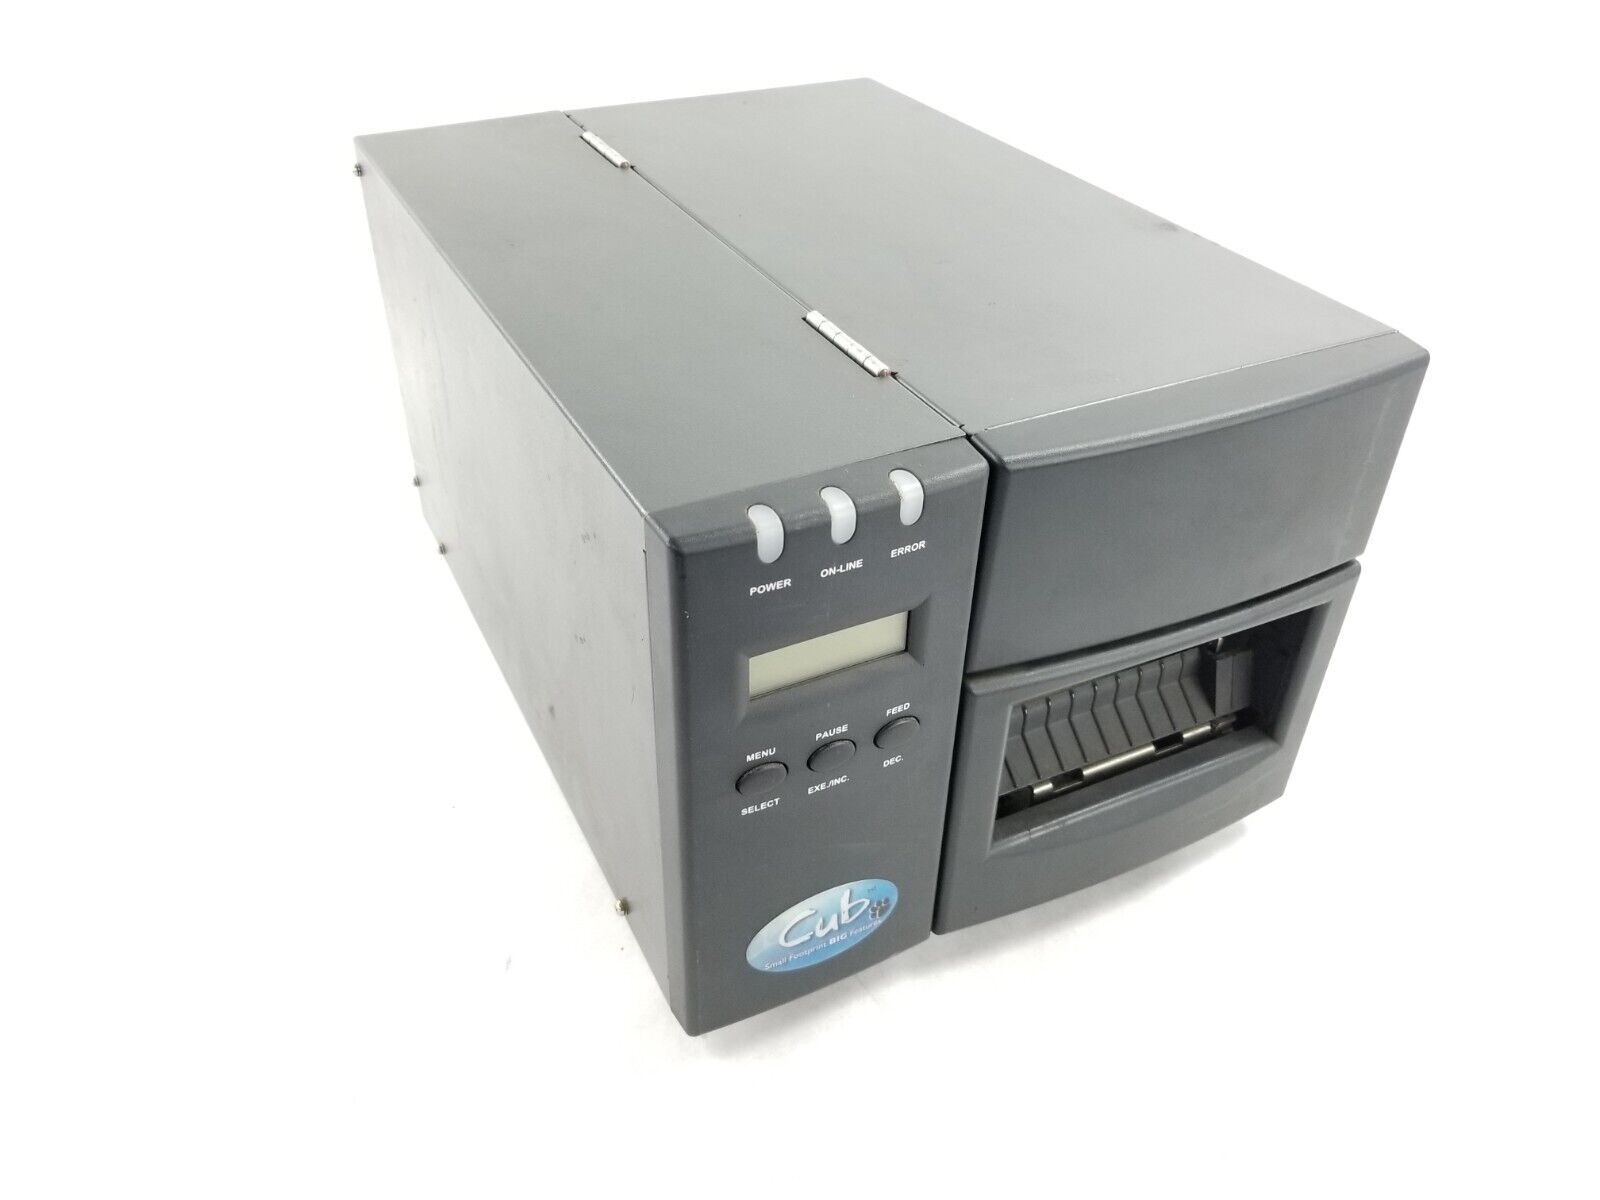 Cub CB-624M Thermal Transfer Printer Parts or Repair Bad Printhead